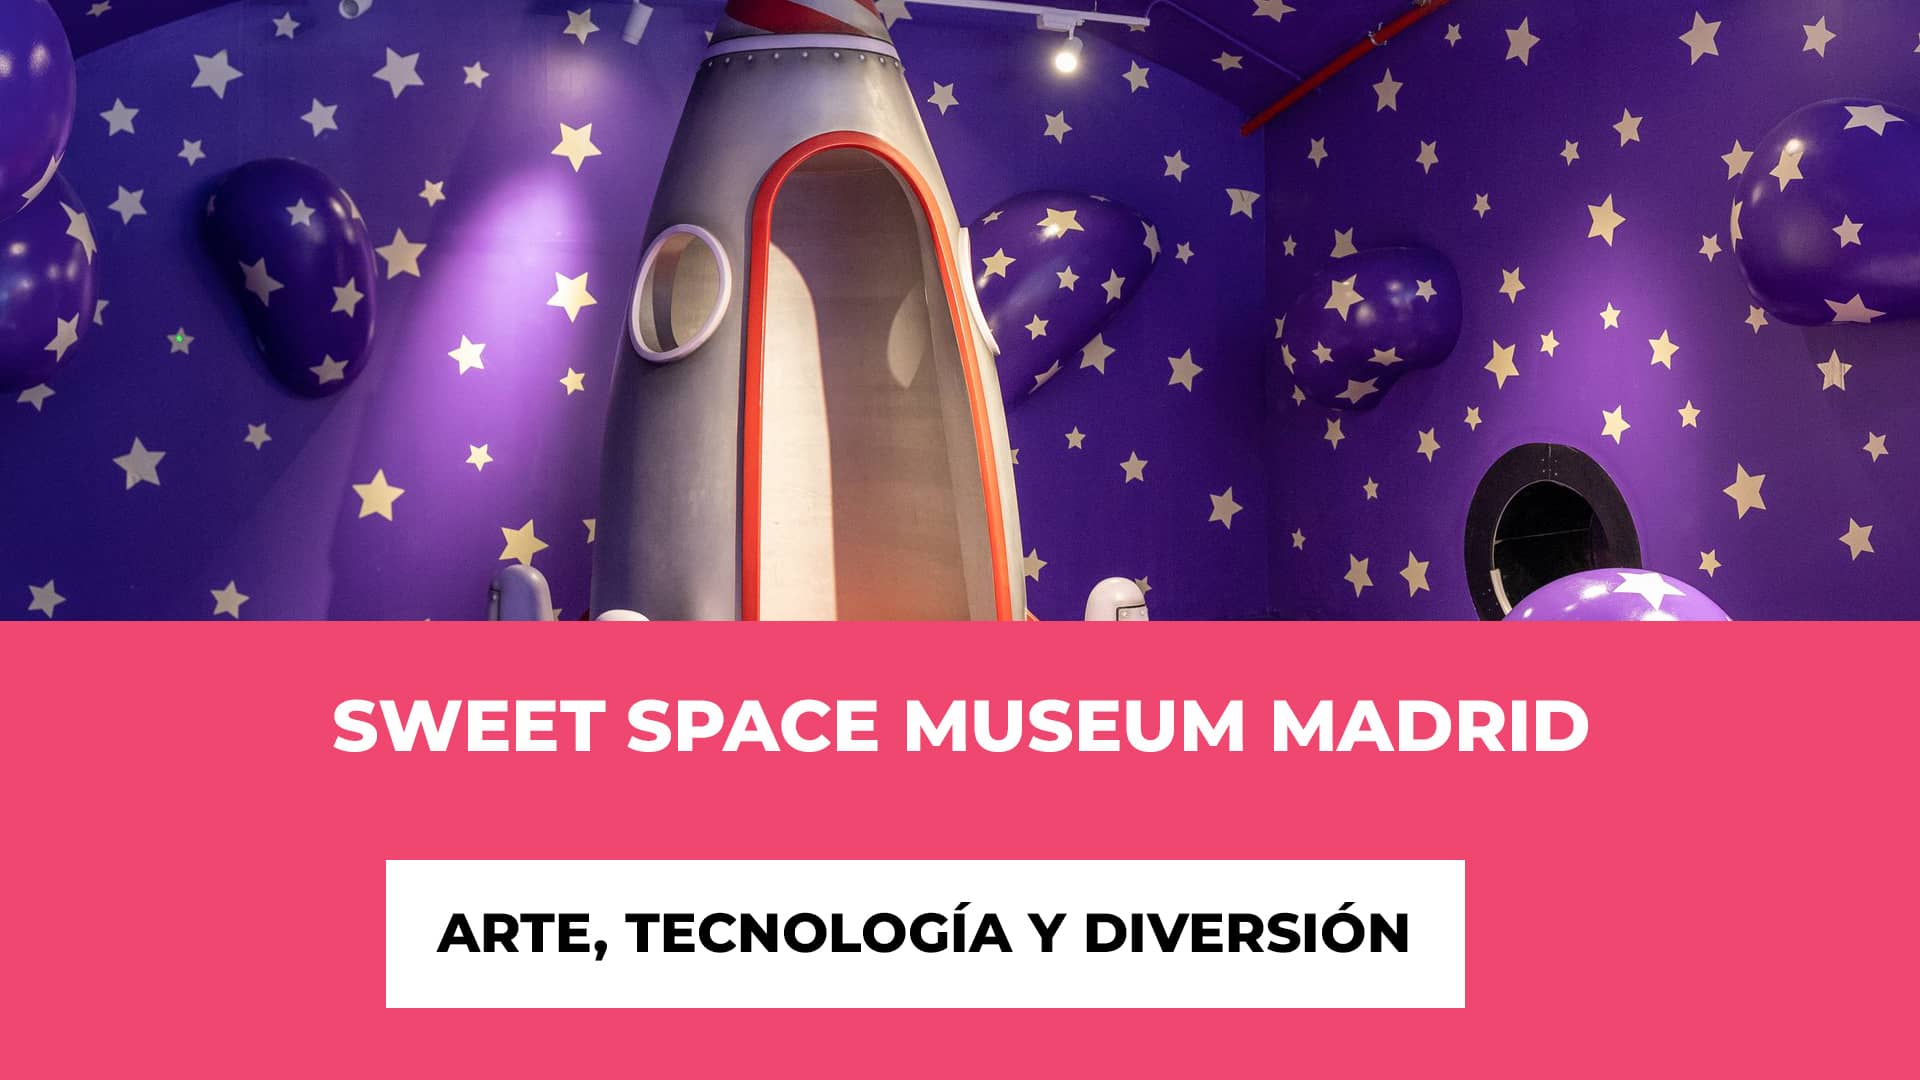 Sweet Space Museum Madrid 2023 - Arte, Tecnología y Diversión - Artistas Destacados - Experiencias Innovadoras - Precios de las entradas